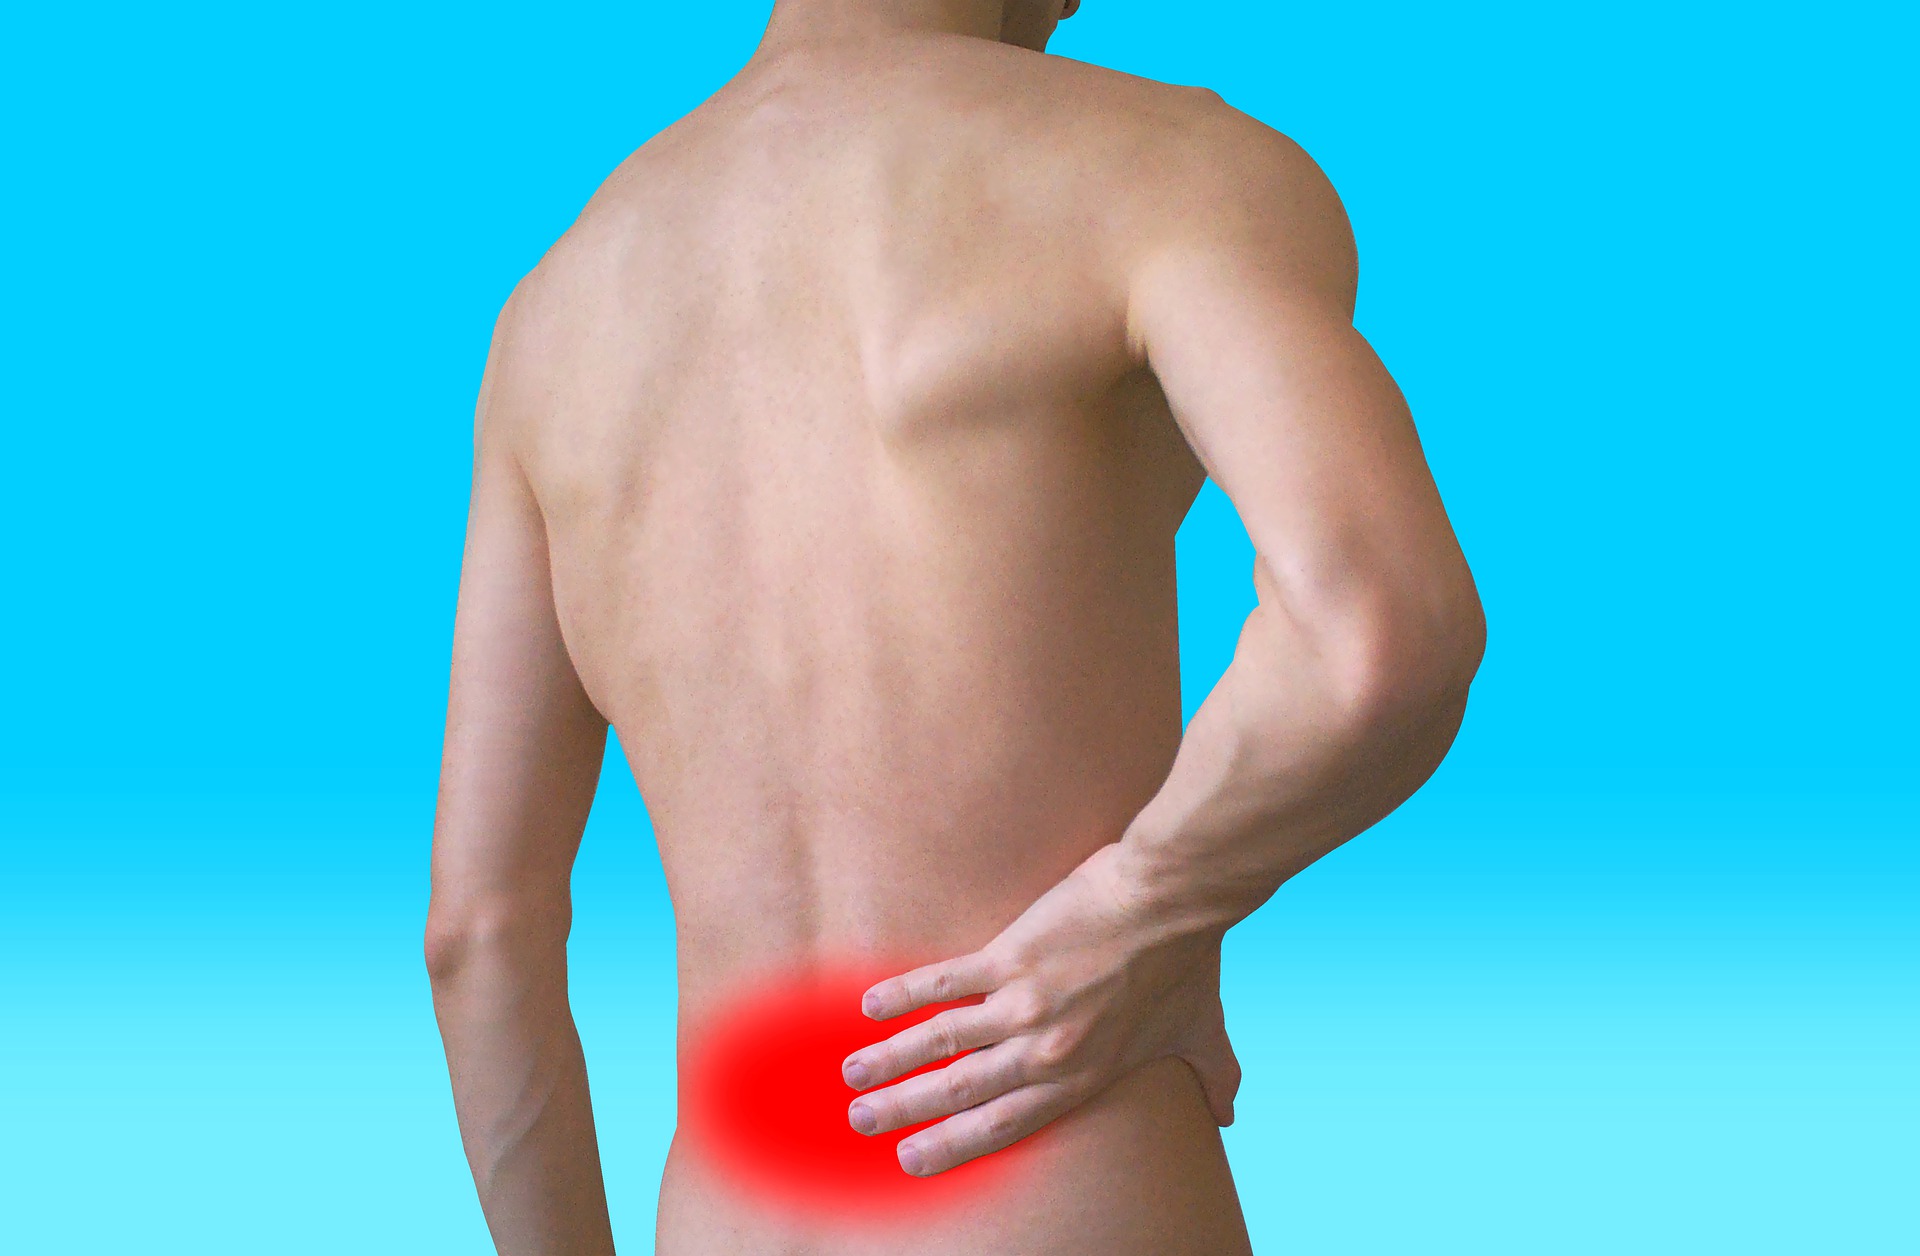 Siete de cada diez españoles tienen dolor muscular, ¿cuáles son sus causas?